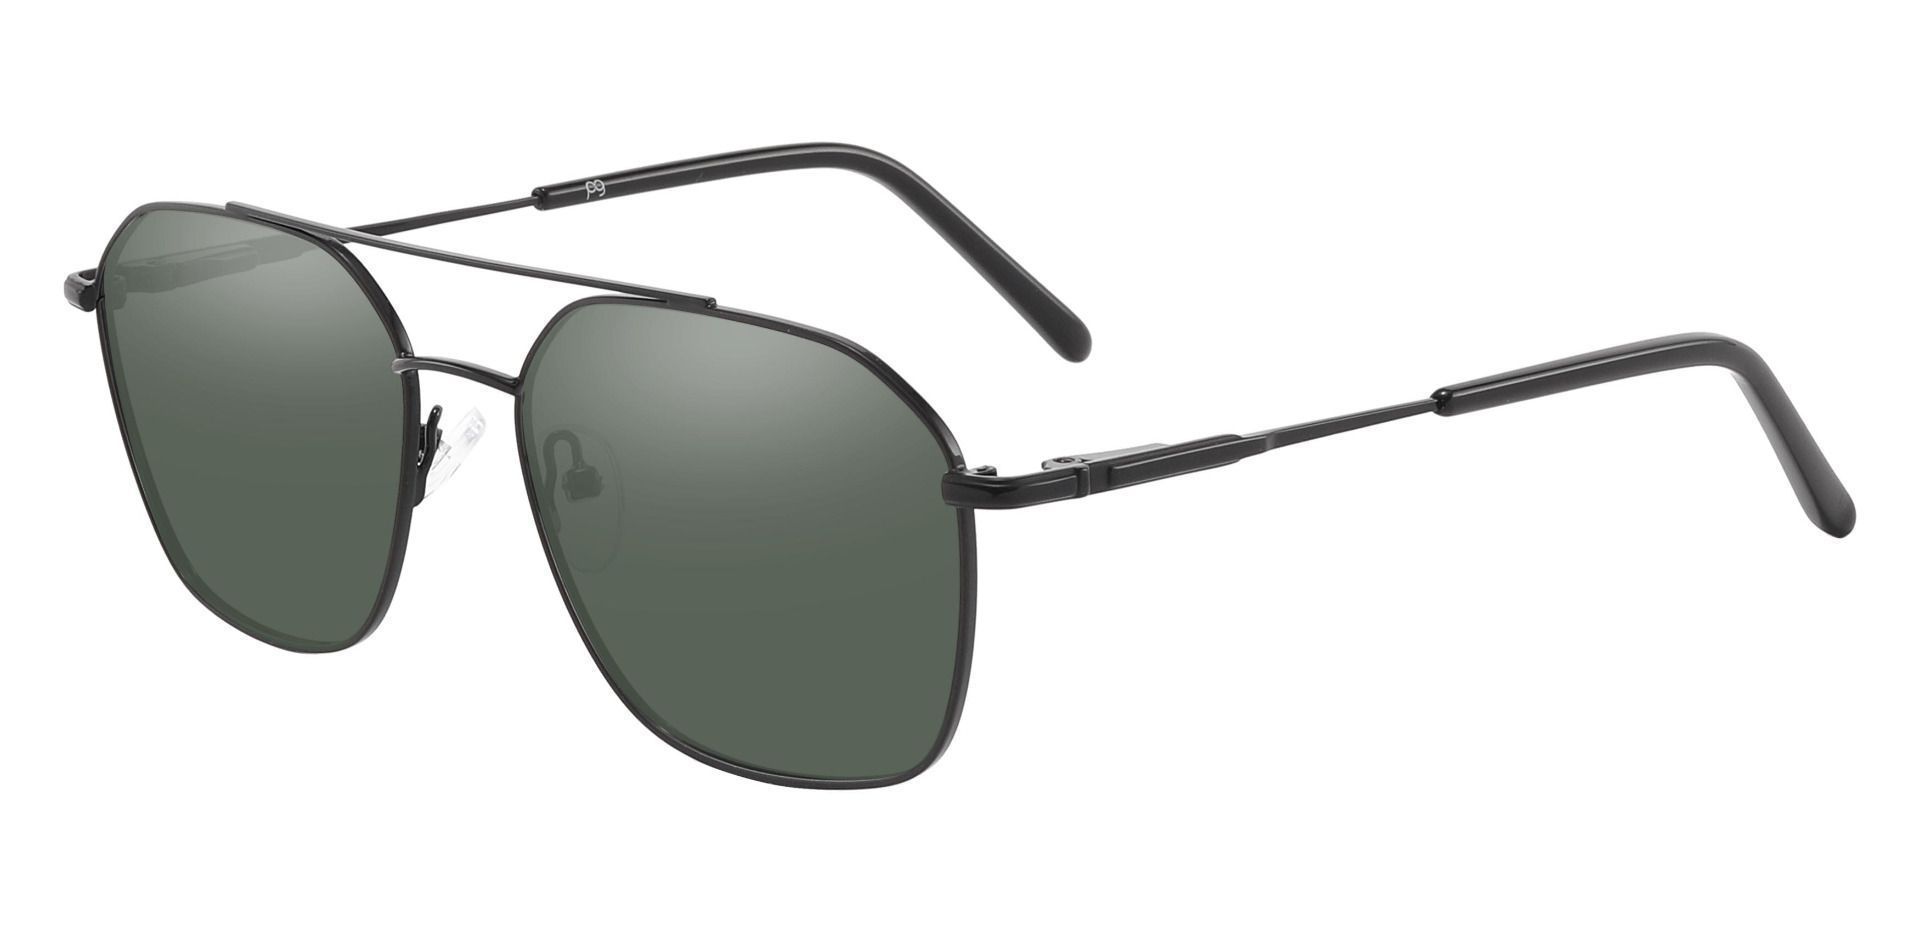 Harvey Aviator Reading Sunglasses - Black Frame With Green Lenses